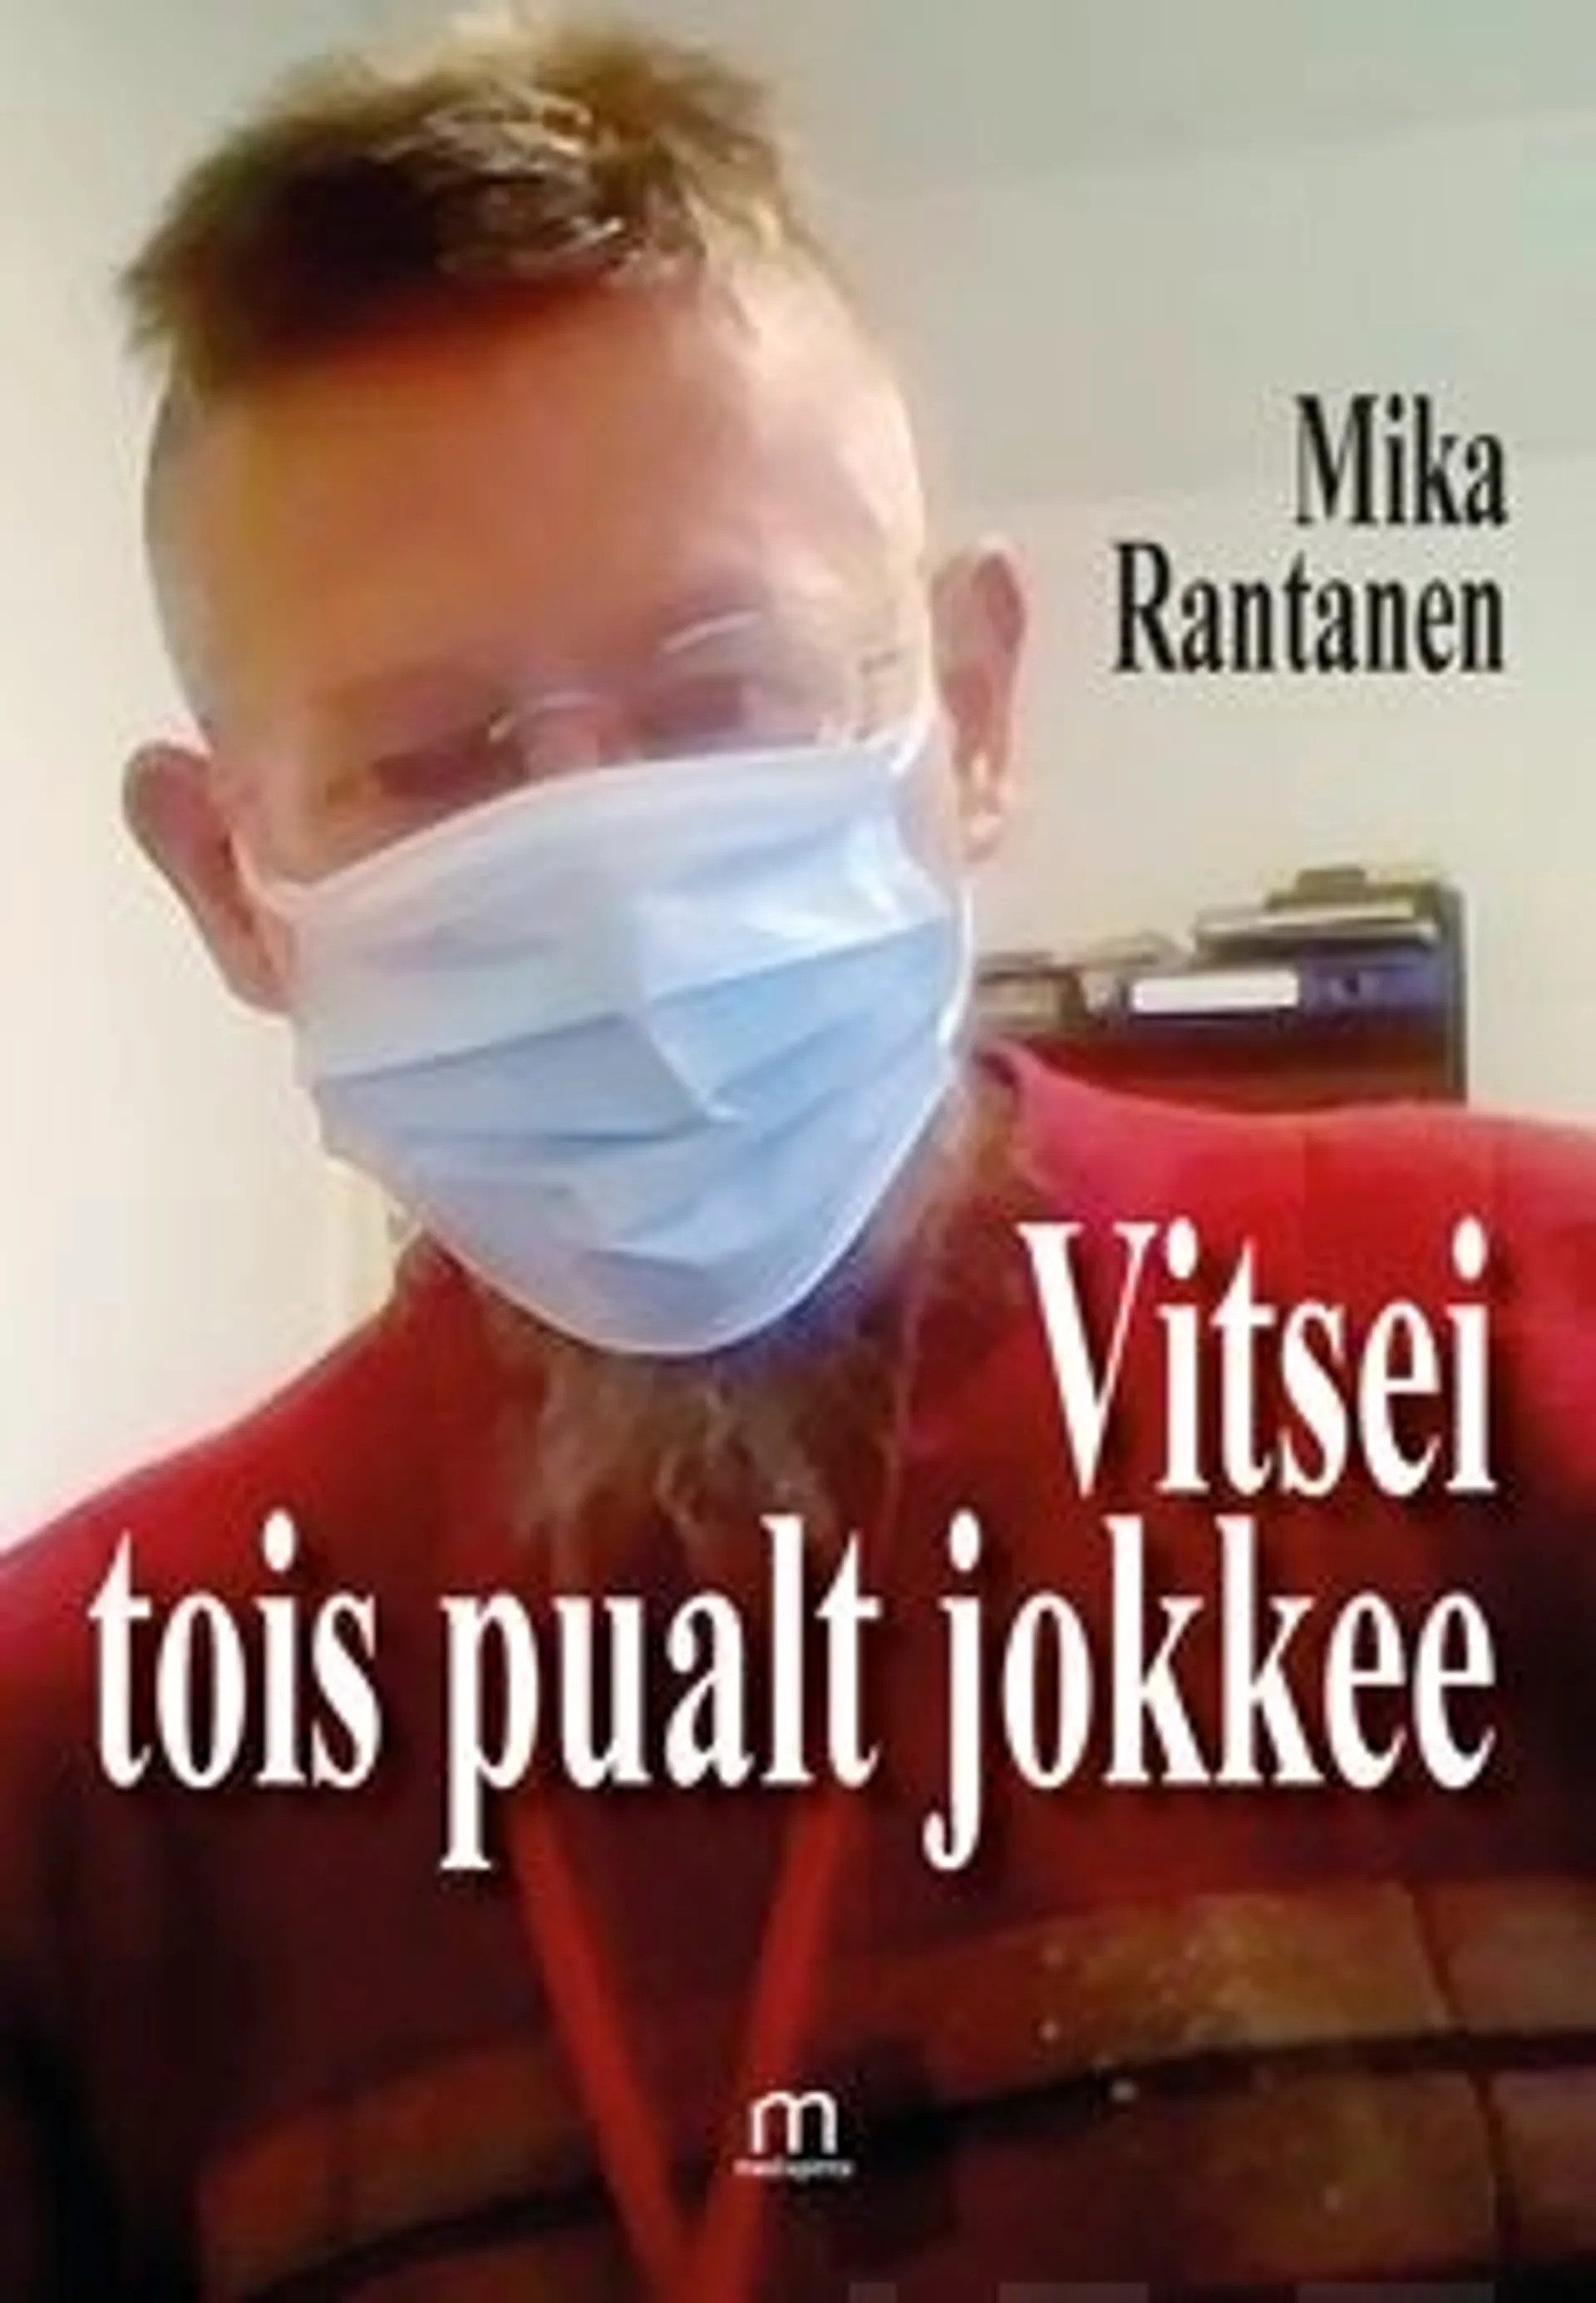 Rantanen, Vitsei tois pualt jokkee - Poems and jokes - runoja ja vitsejä suomeksi ja englanniksi